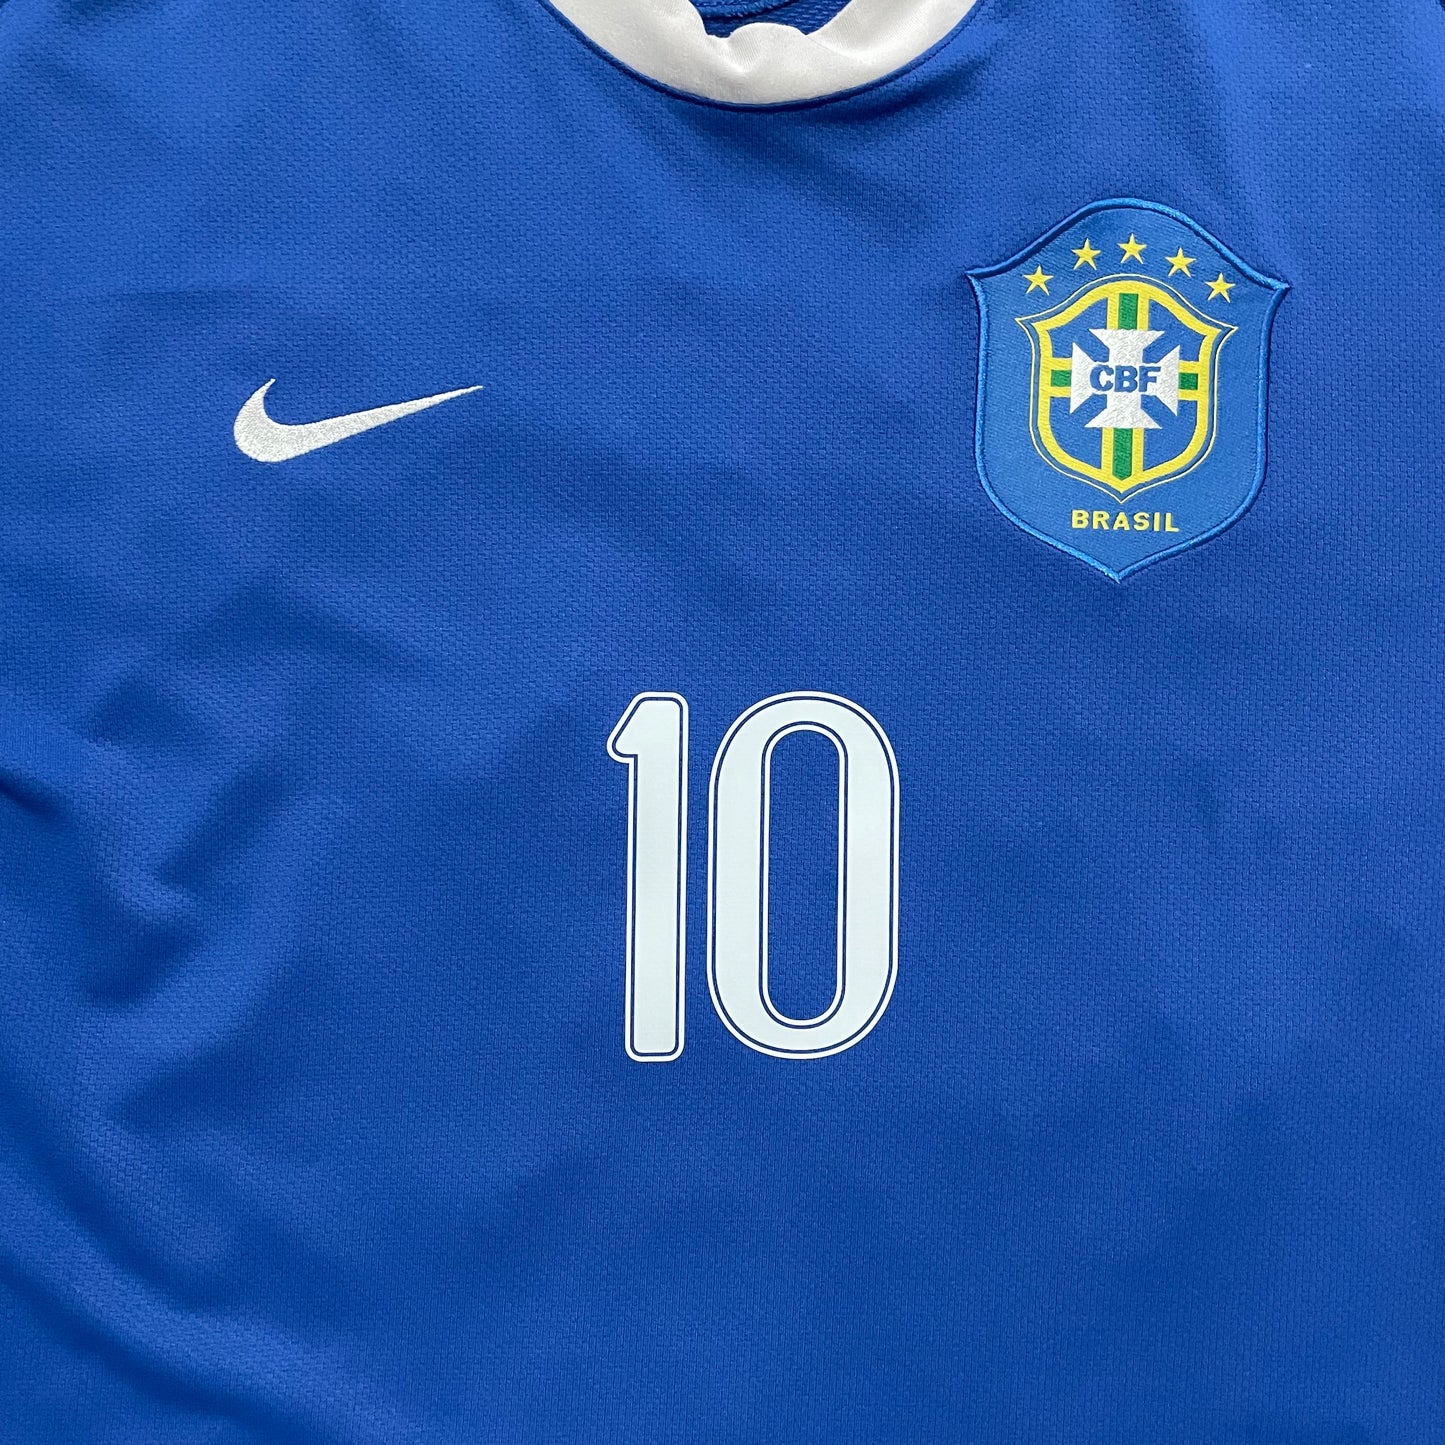 2006 World Cup Brazil away shirt #10 Ronaldinho (L)